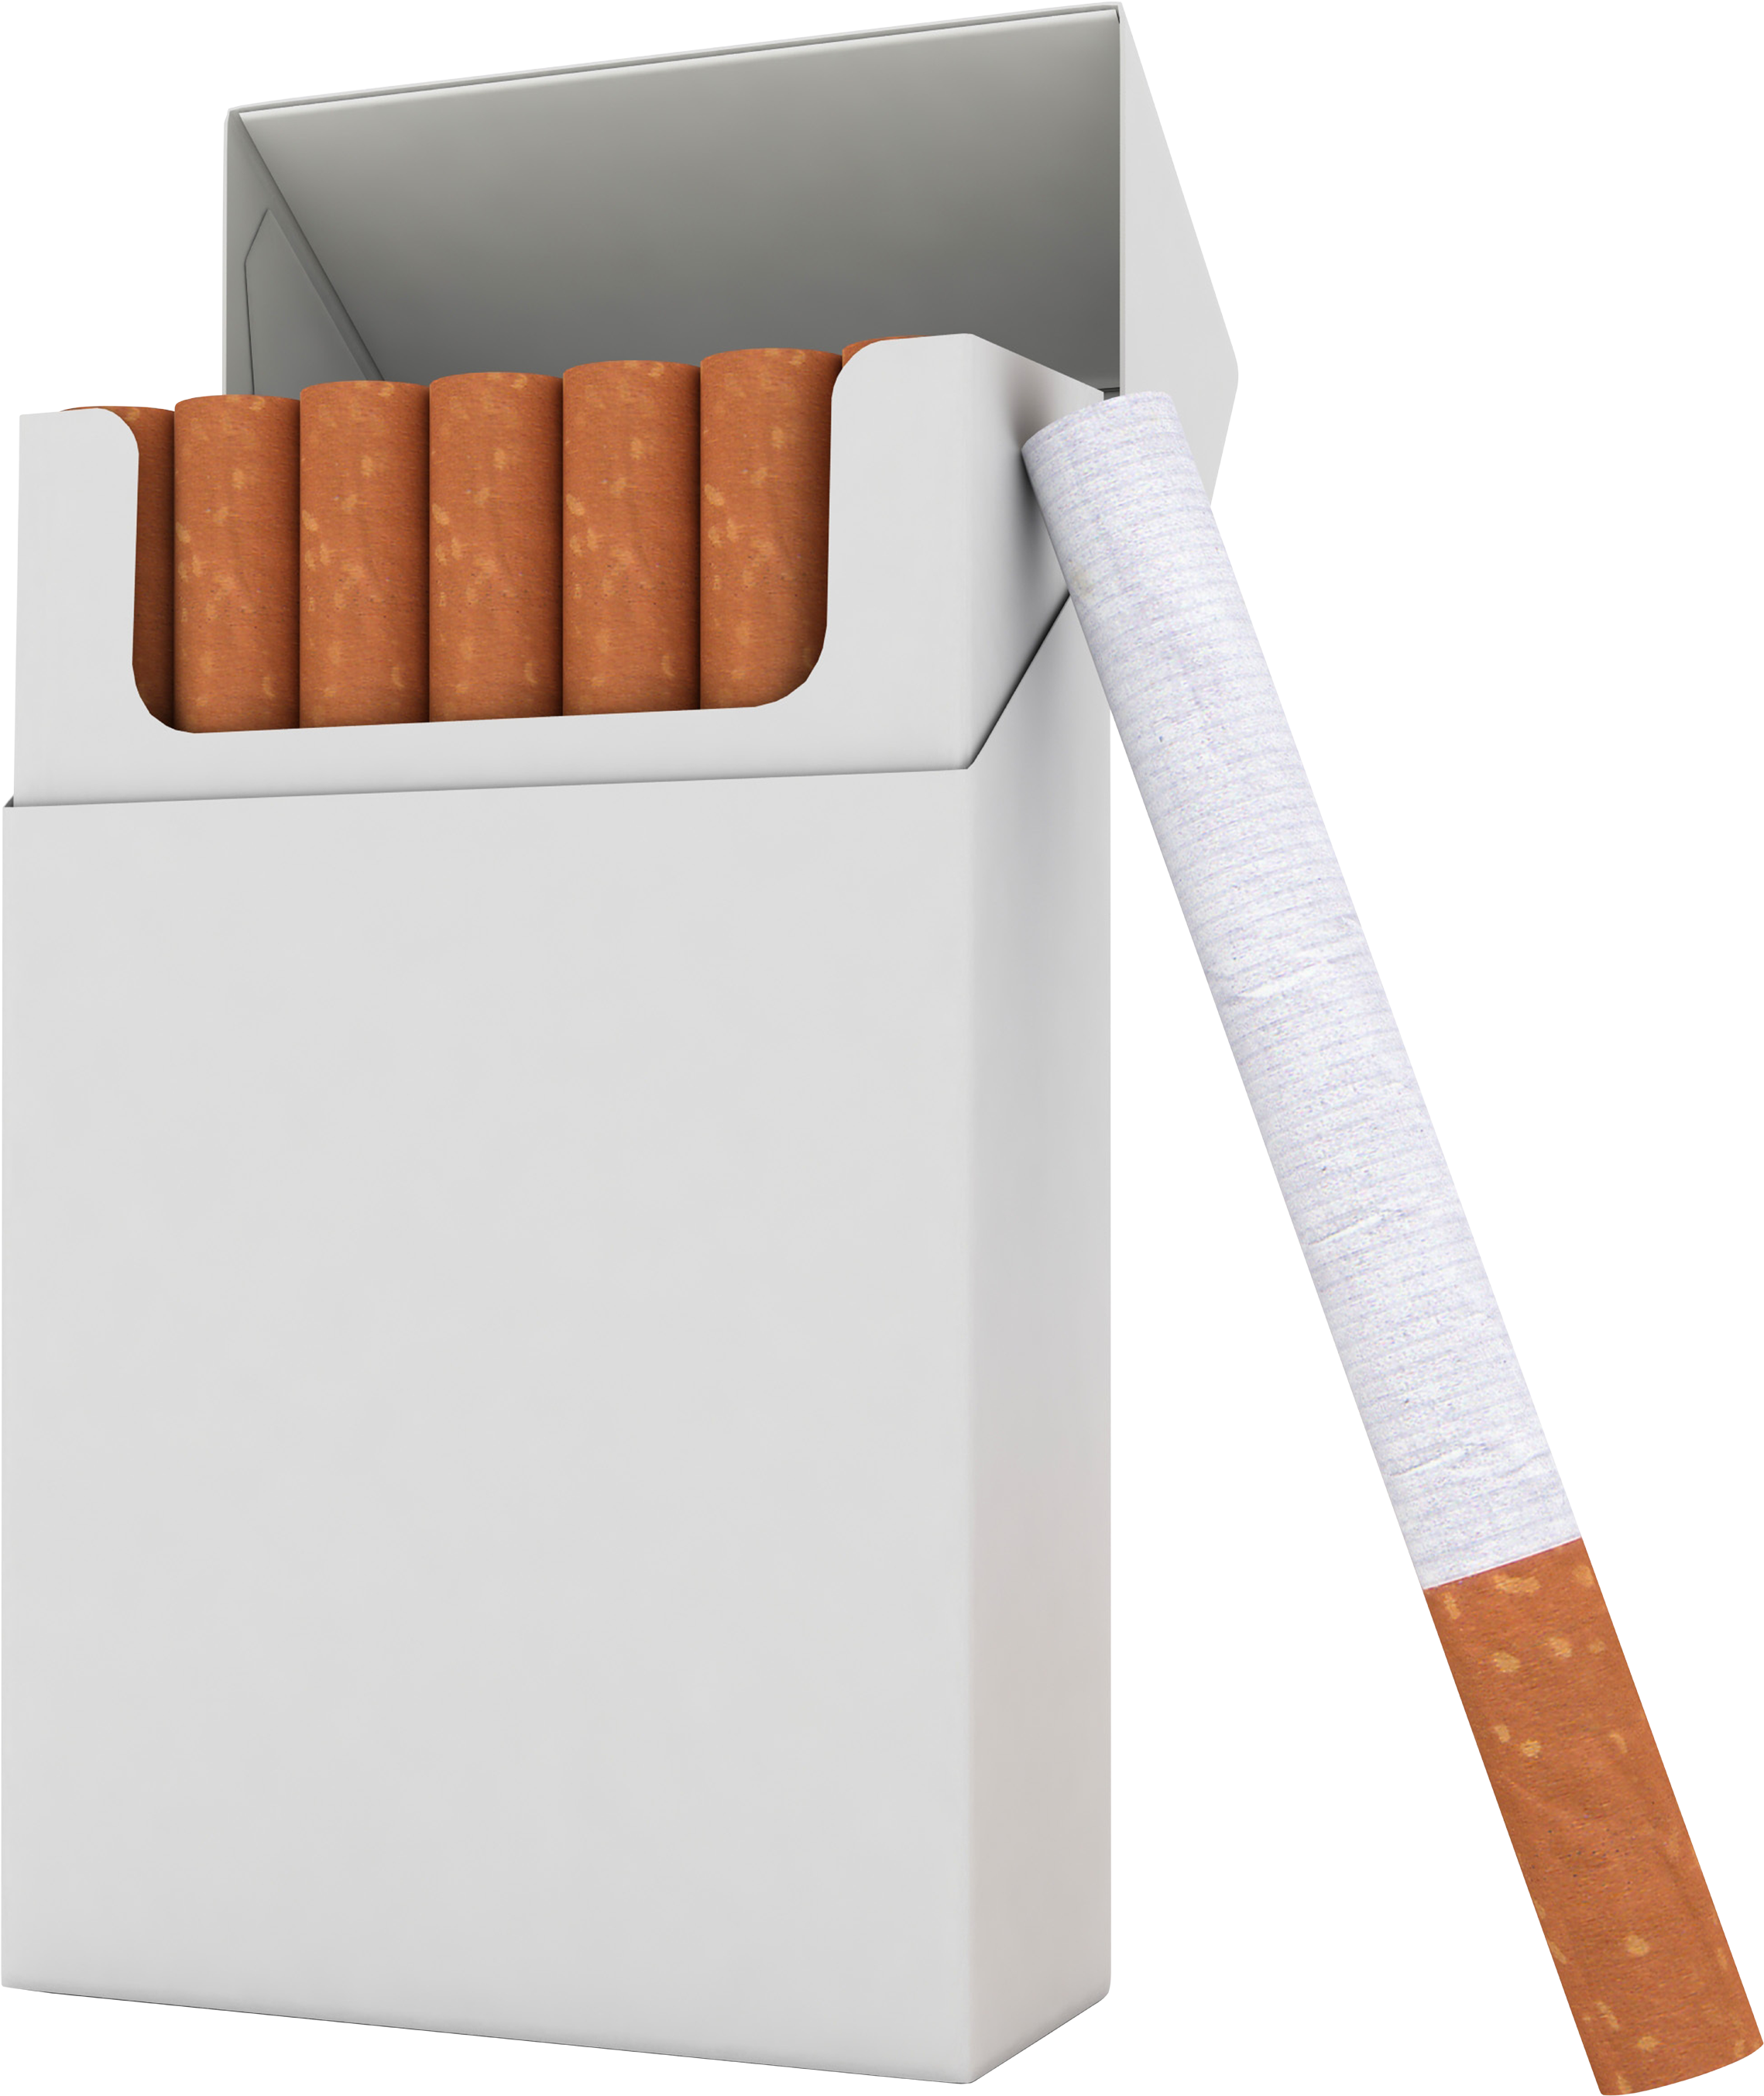 Un pacchetto di sigarette